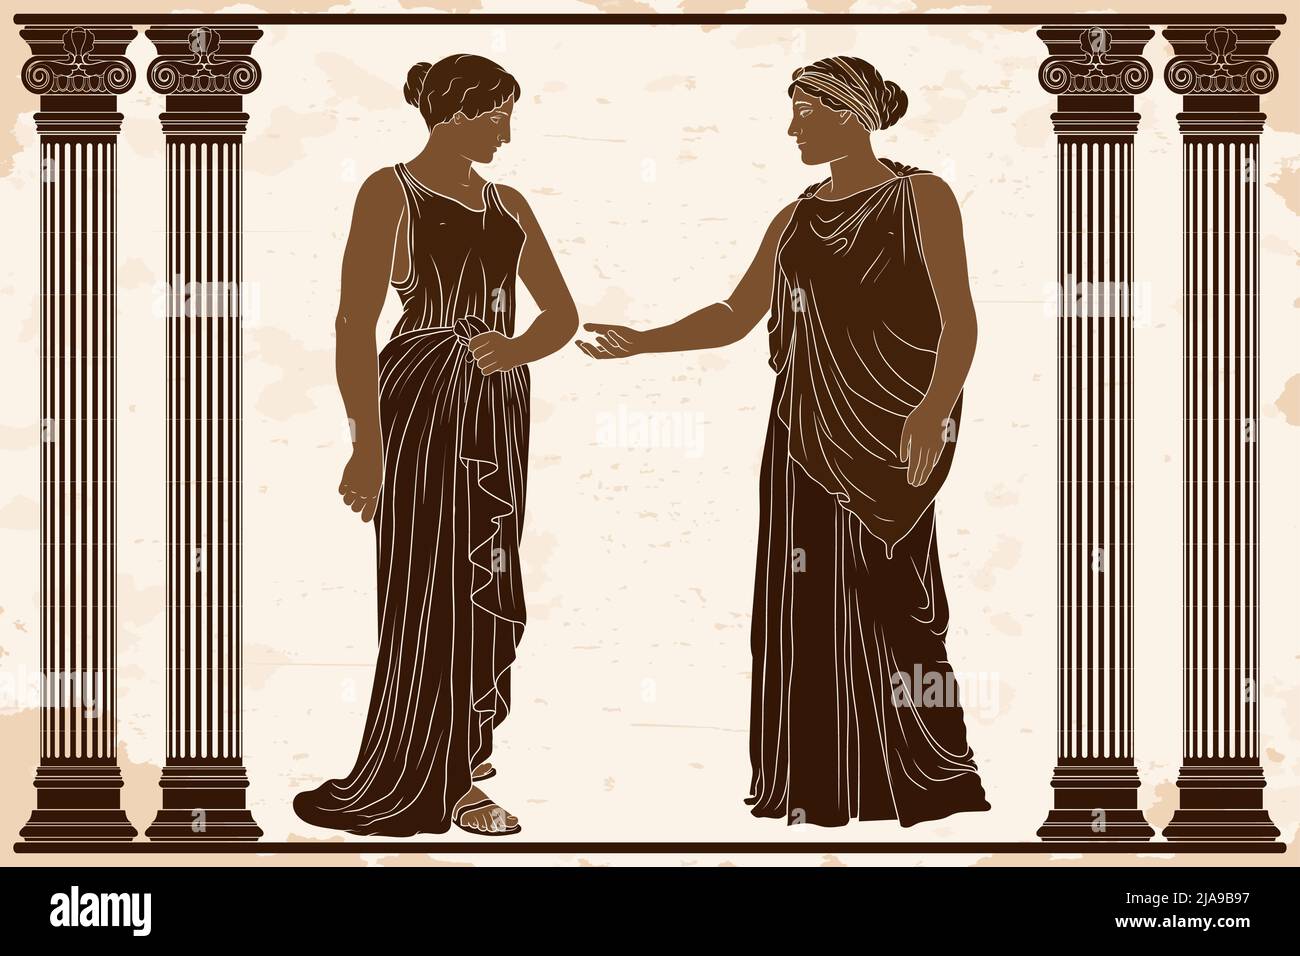 Zwei altgriechische Frauen in Tuniken stehen im Tempel zwischen zwei Säulen und reden. Stock Vektor